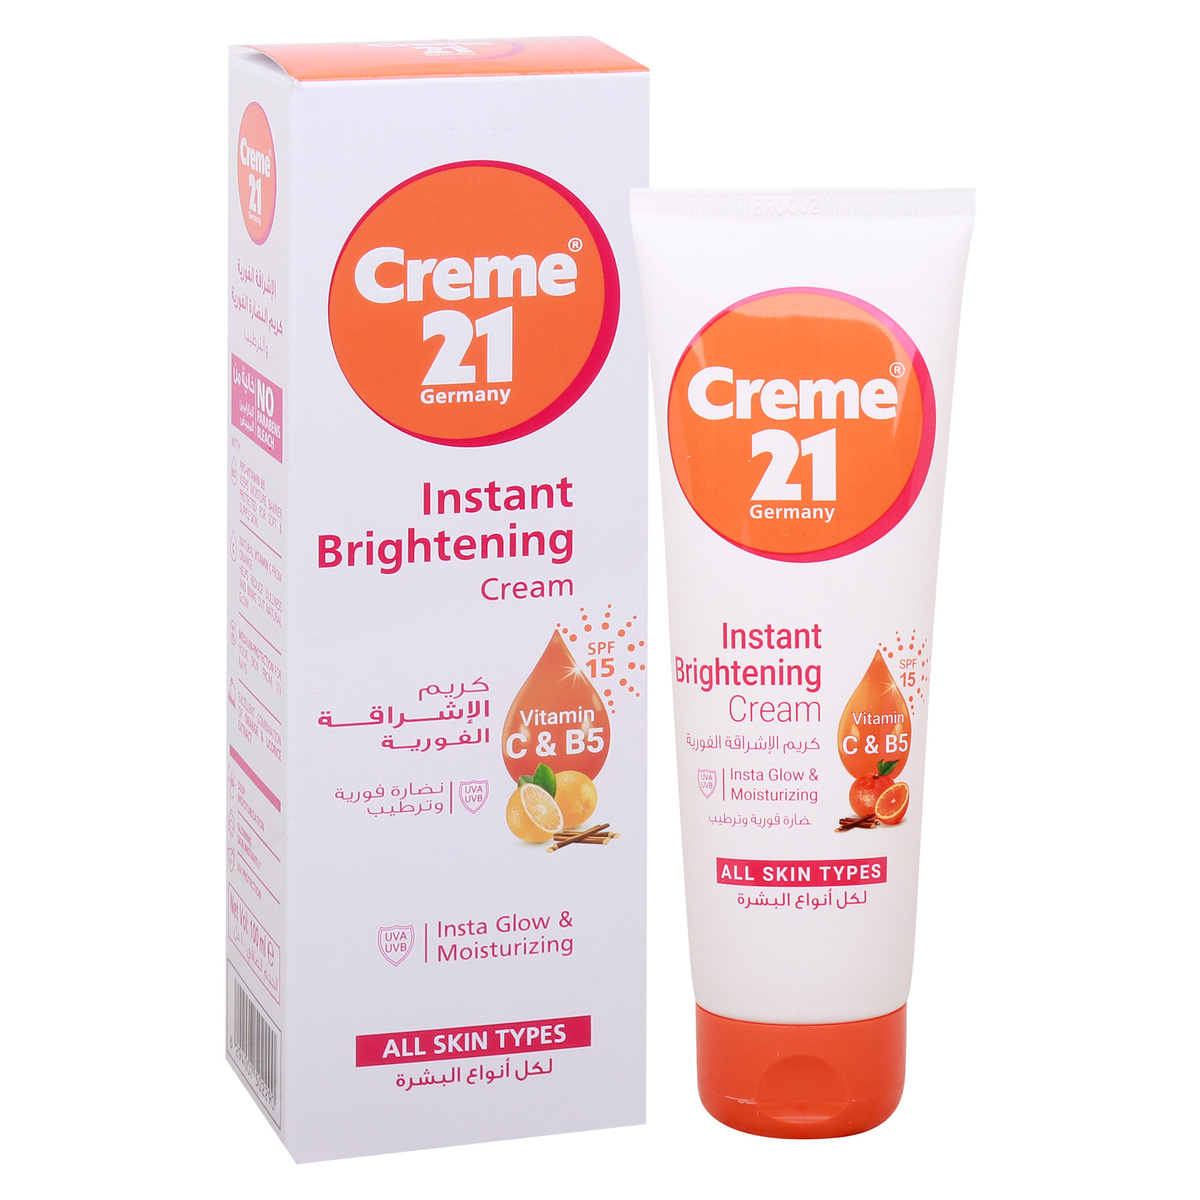 Creme 21 Instant Brightening Cream Vitamin C & B5 100 ml